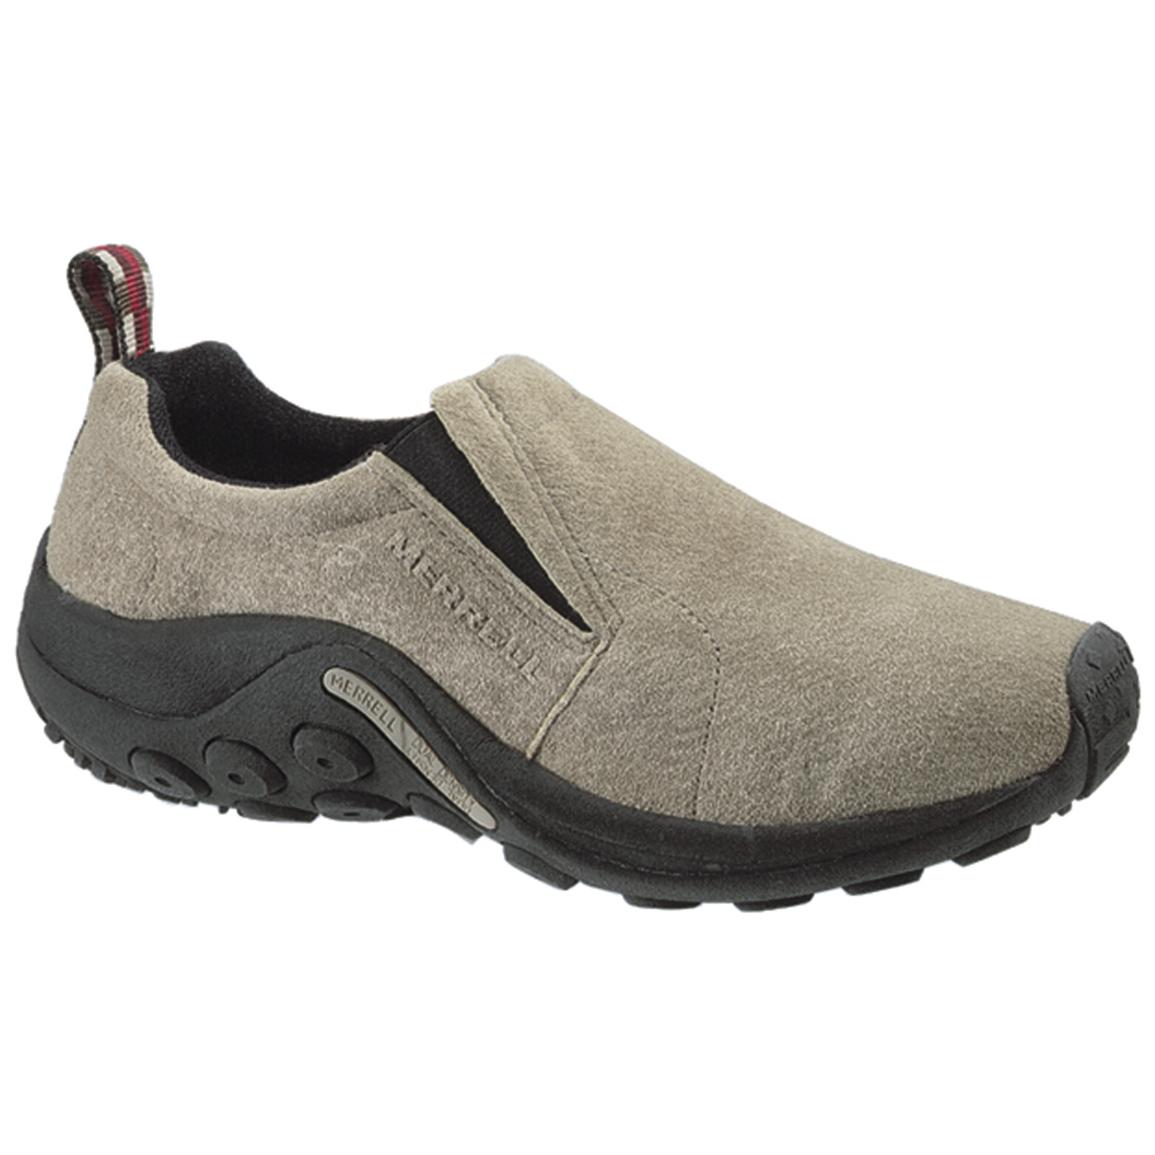 Men's Merrell® Jungle Moc Slip - ons - 159628, Casual Shoes at ...